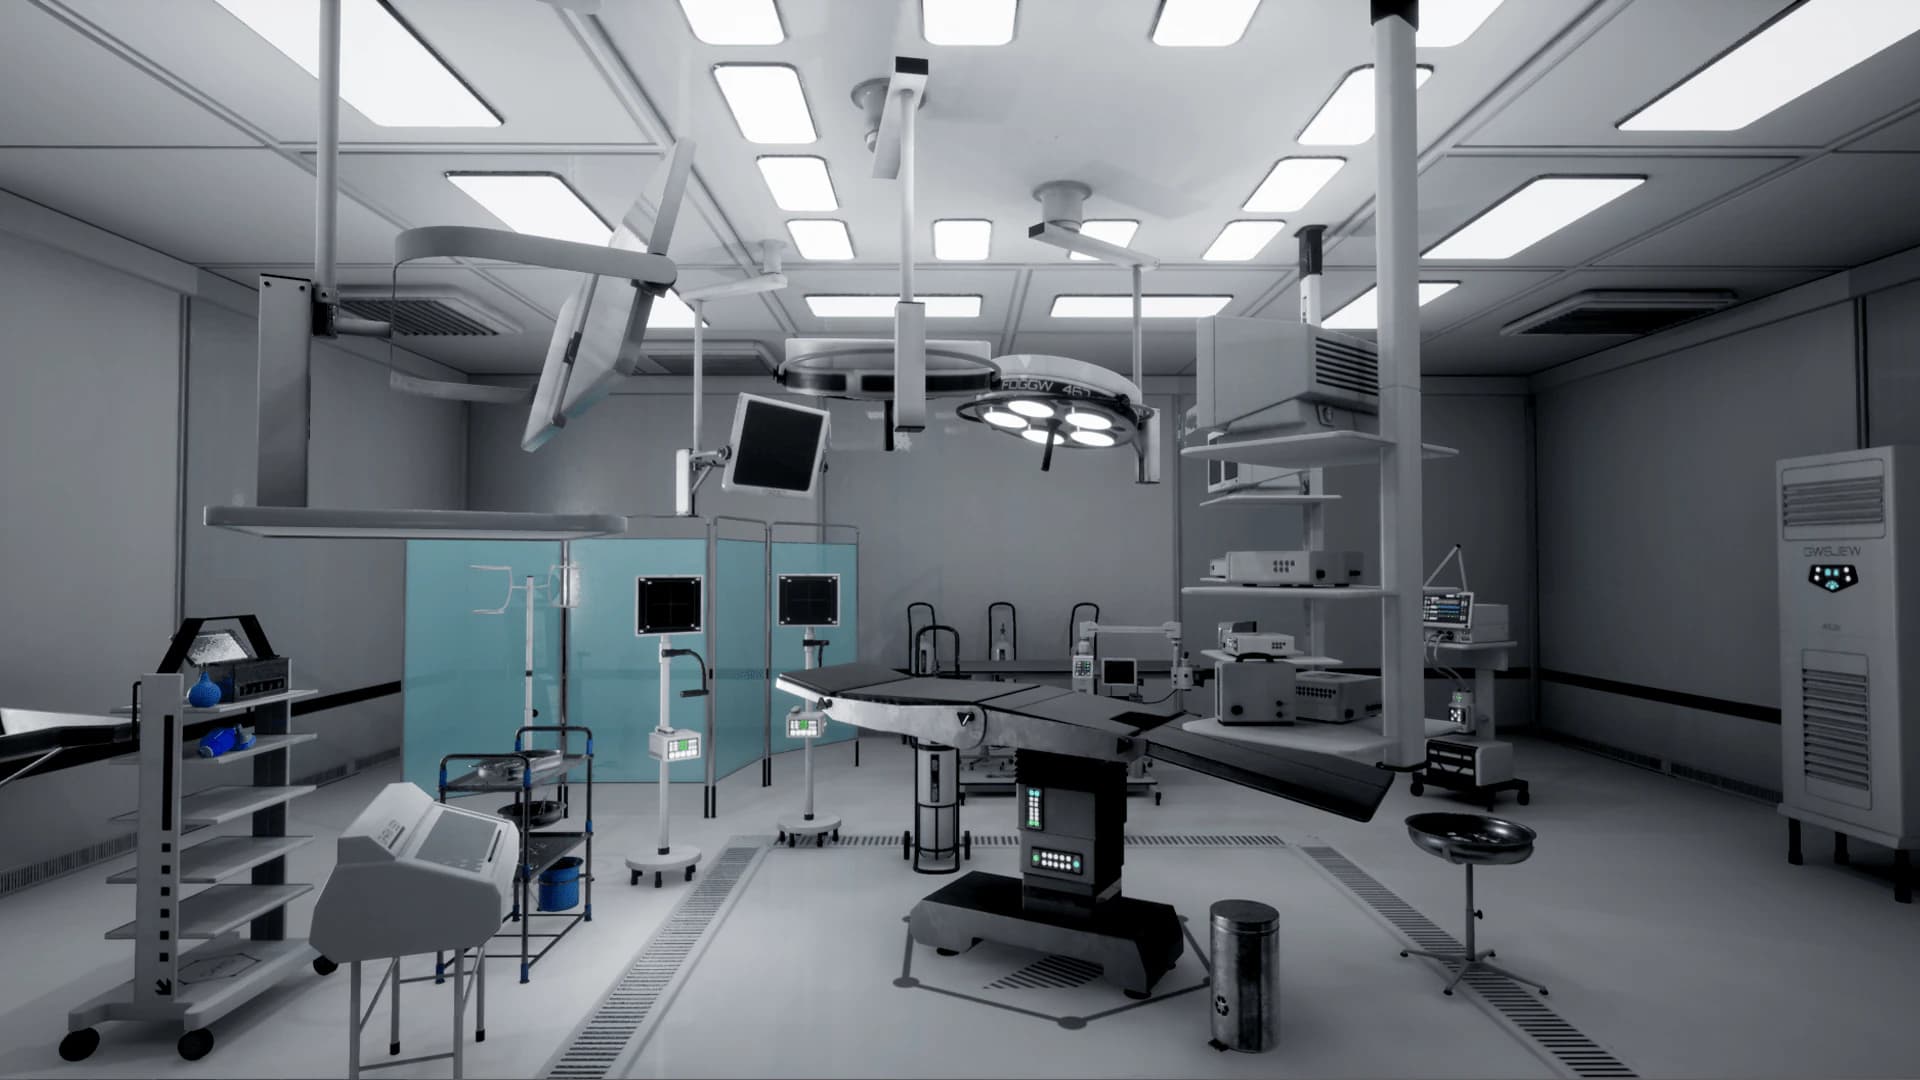 3D models of medical equipment